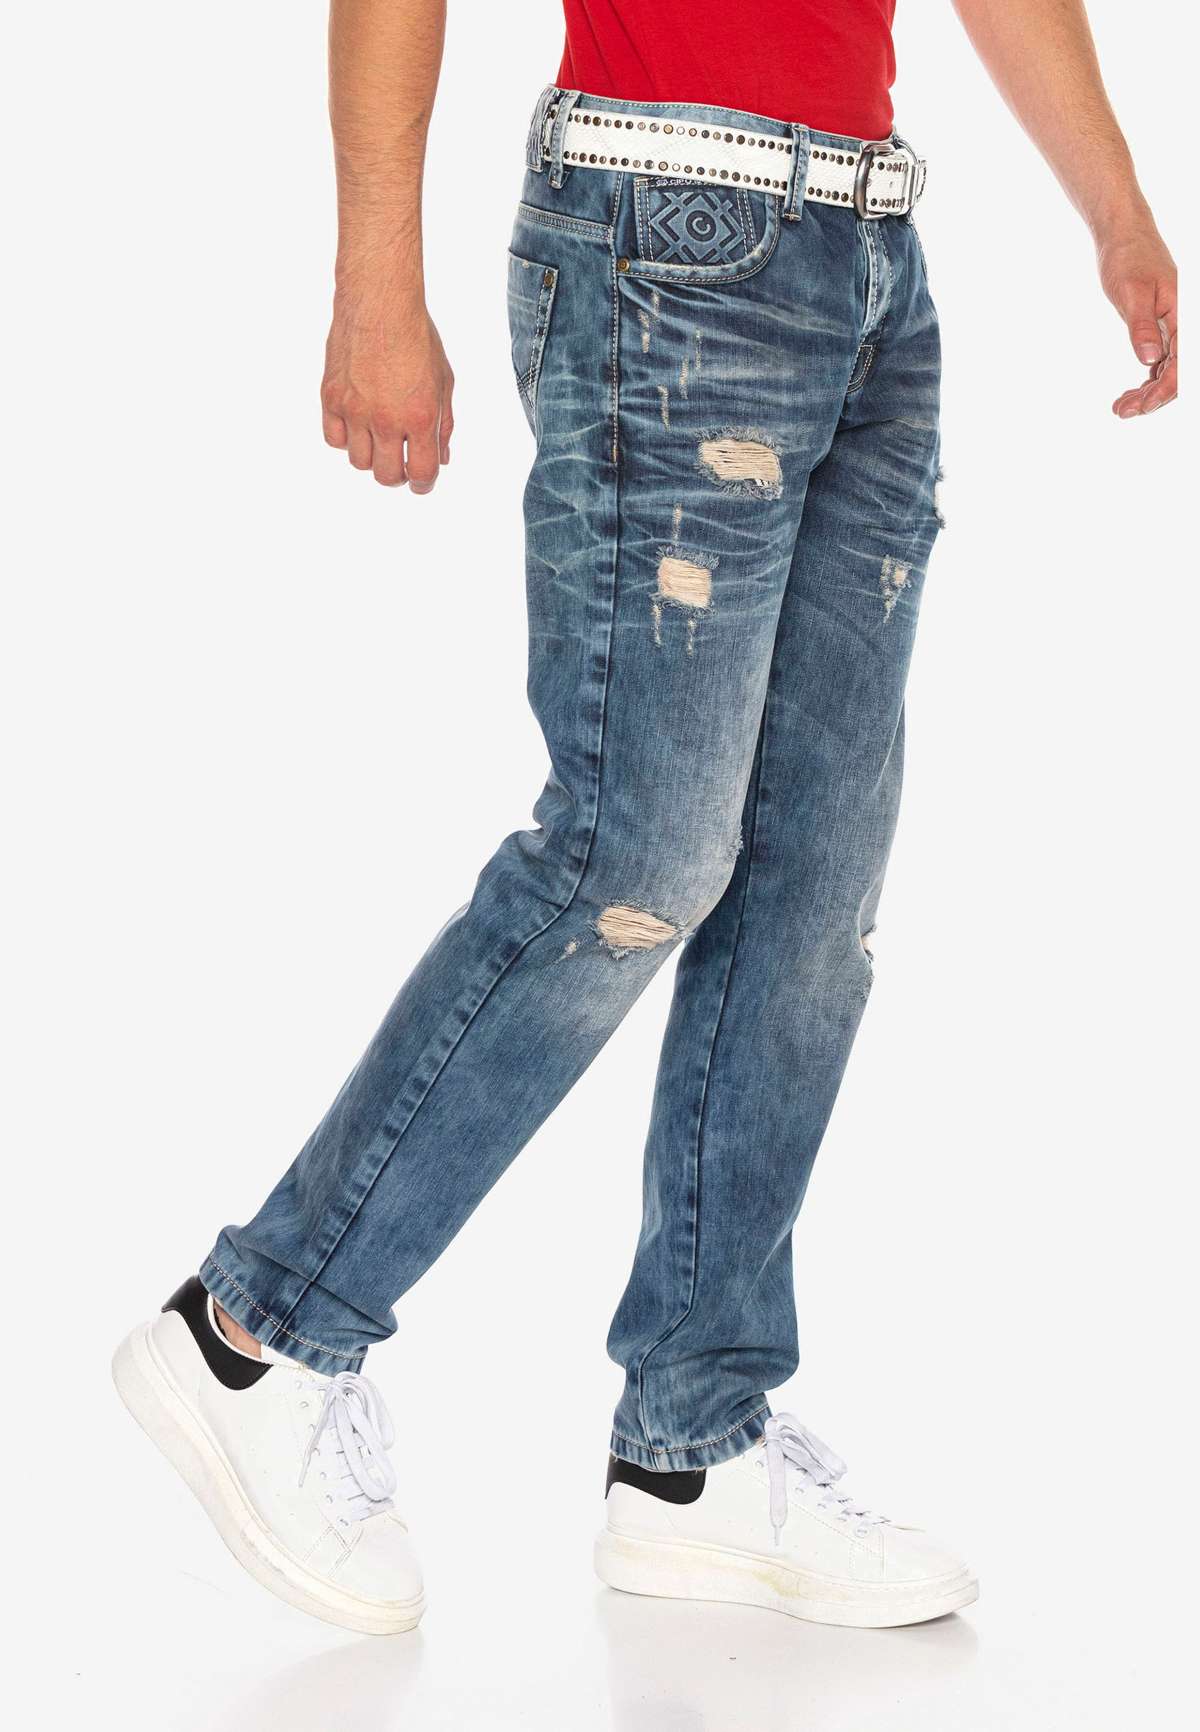 Прямые джинсы в модном разрушенном образе